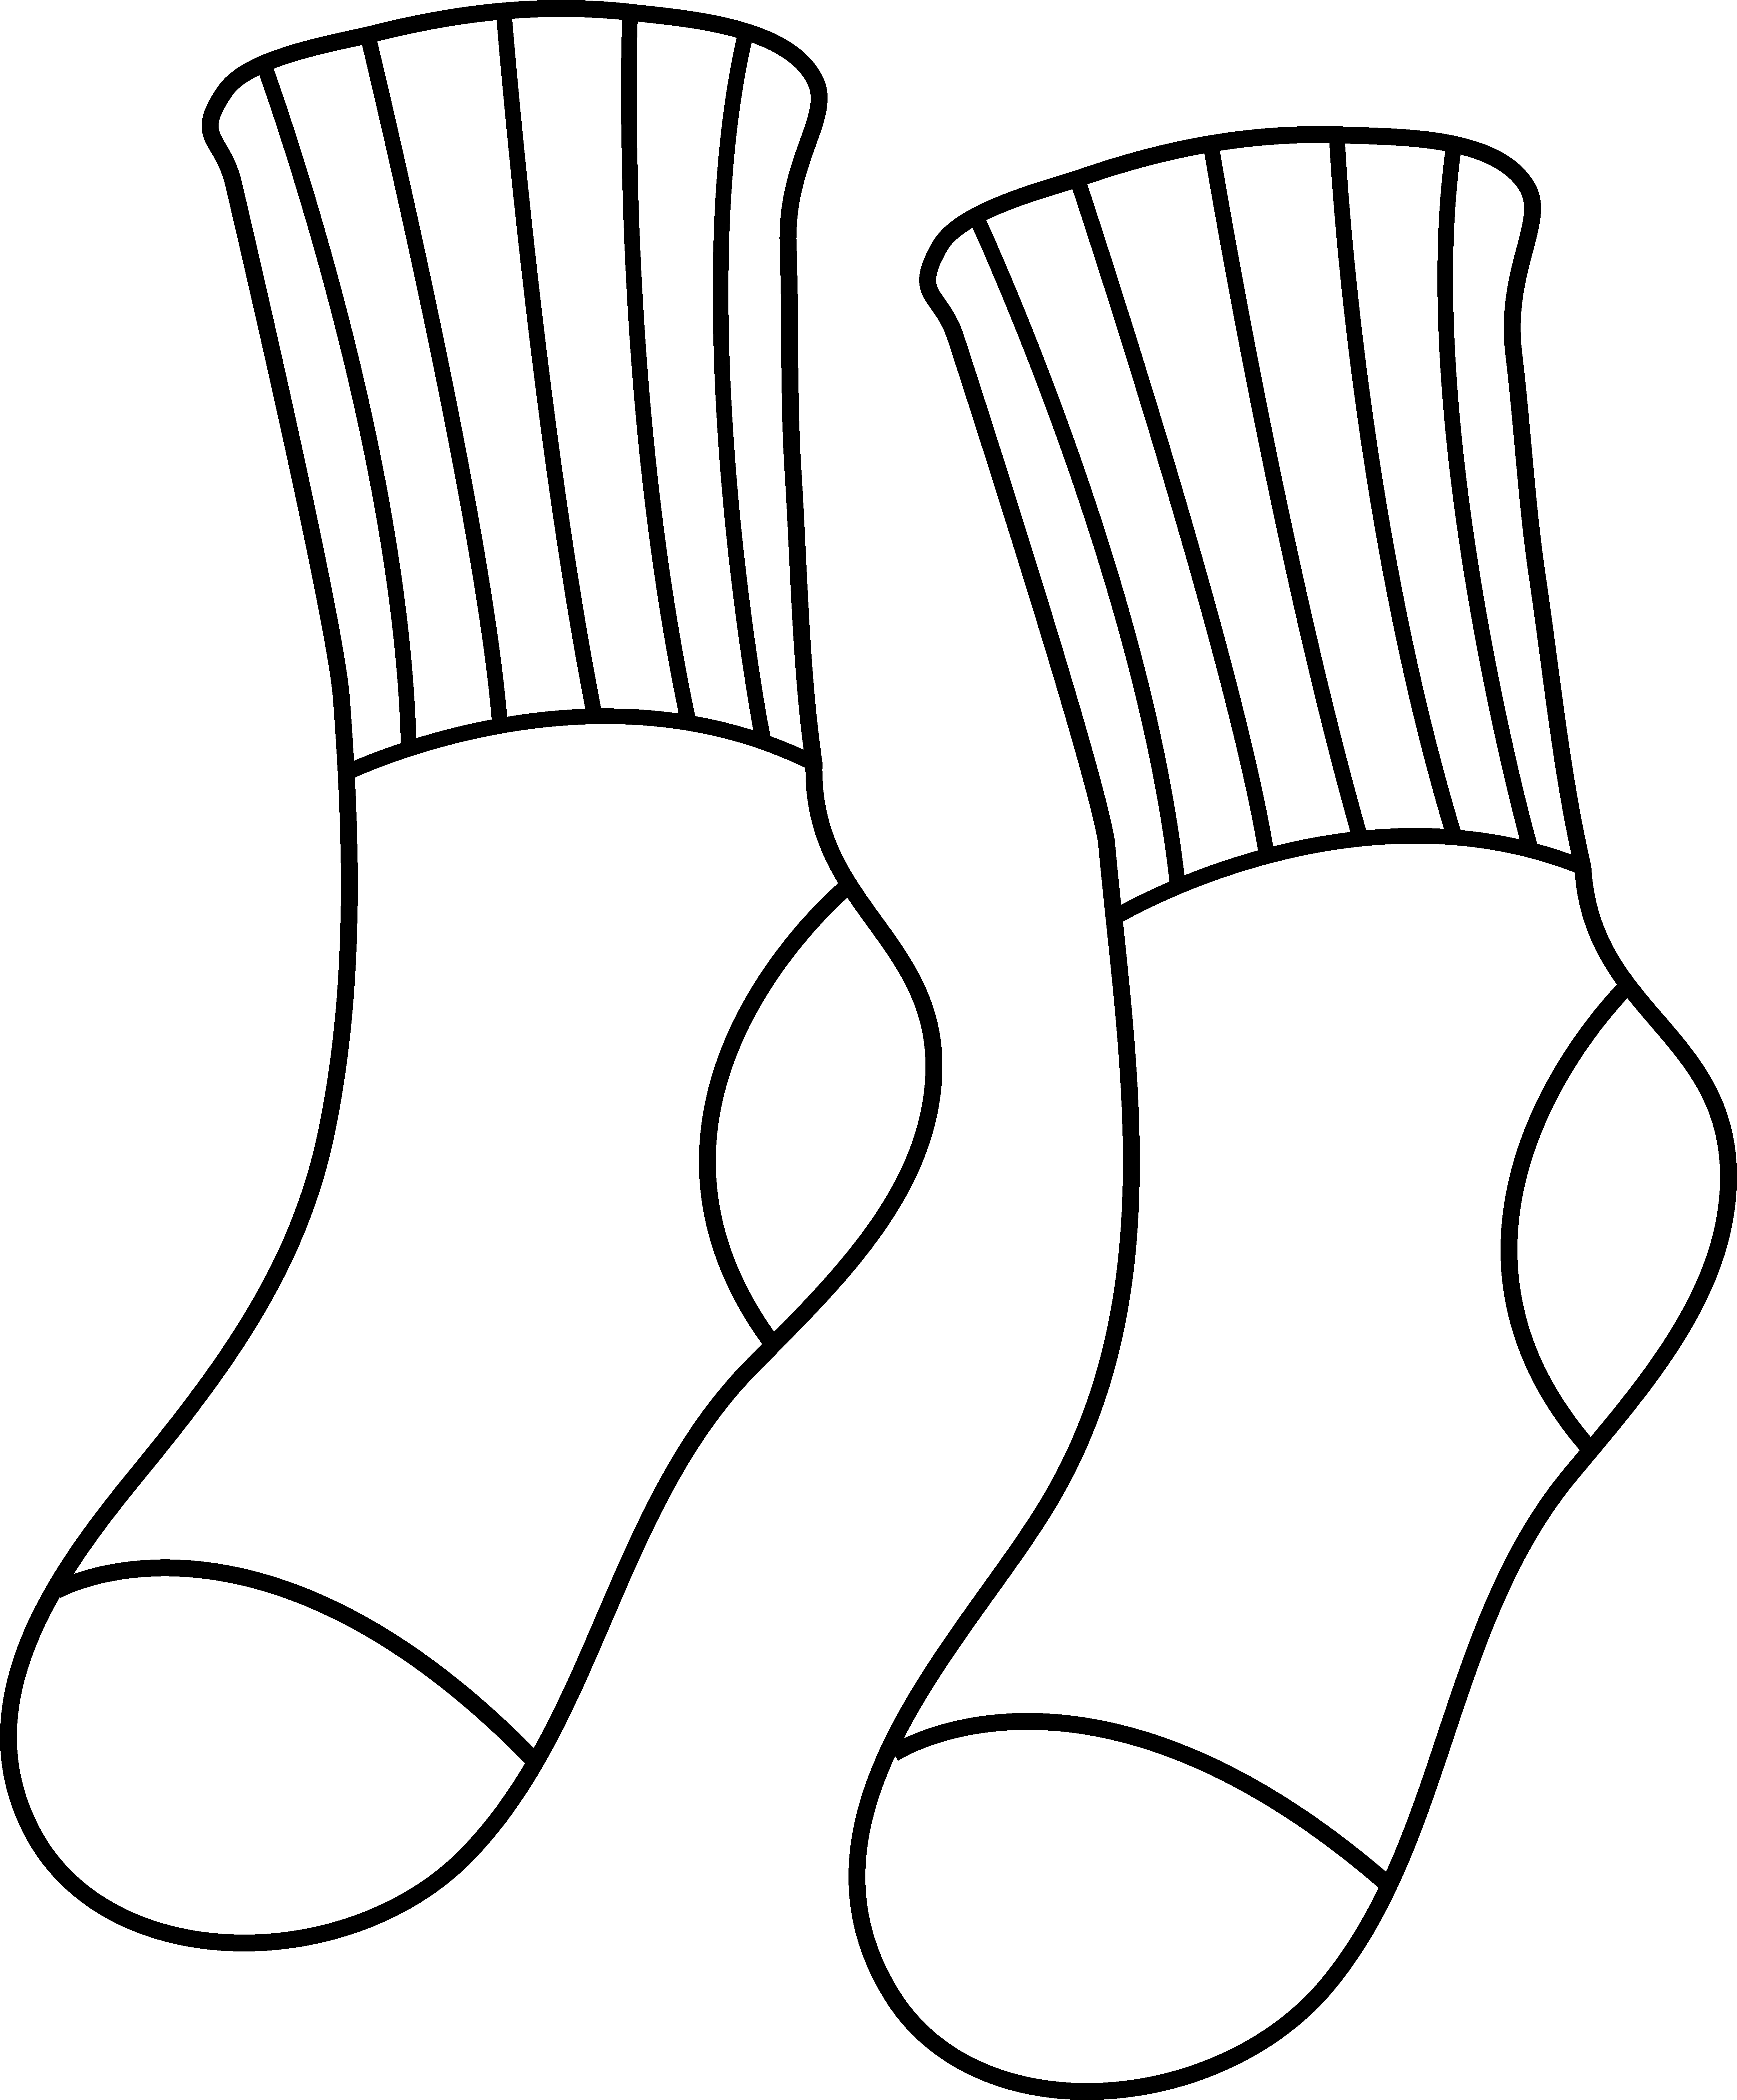 14 Socks Outline Template Images Socks Clip Art Free, Fox in Socks